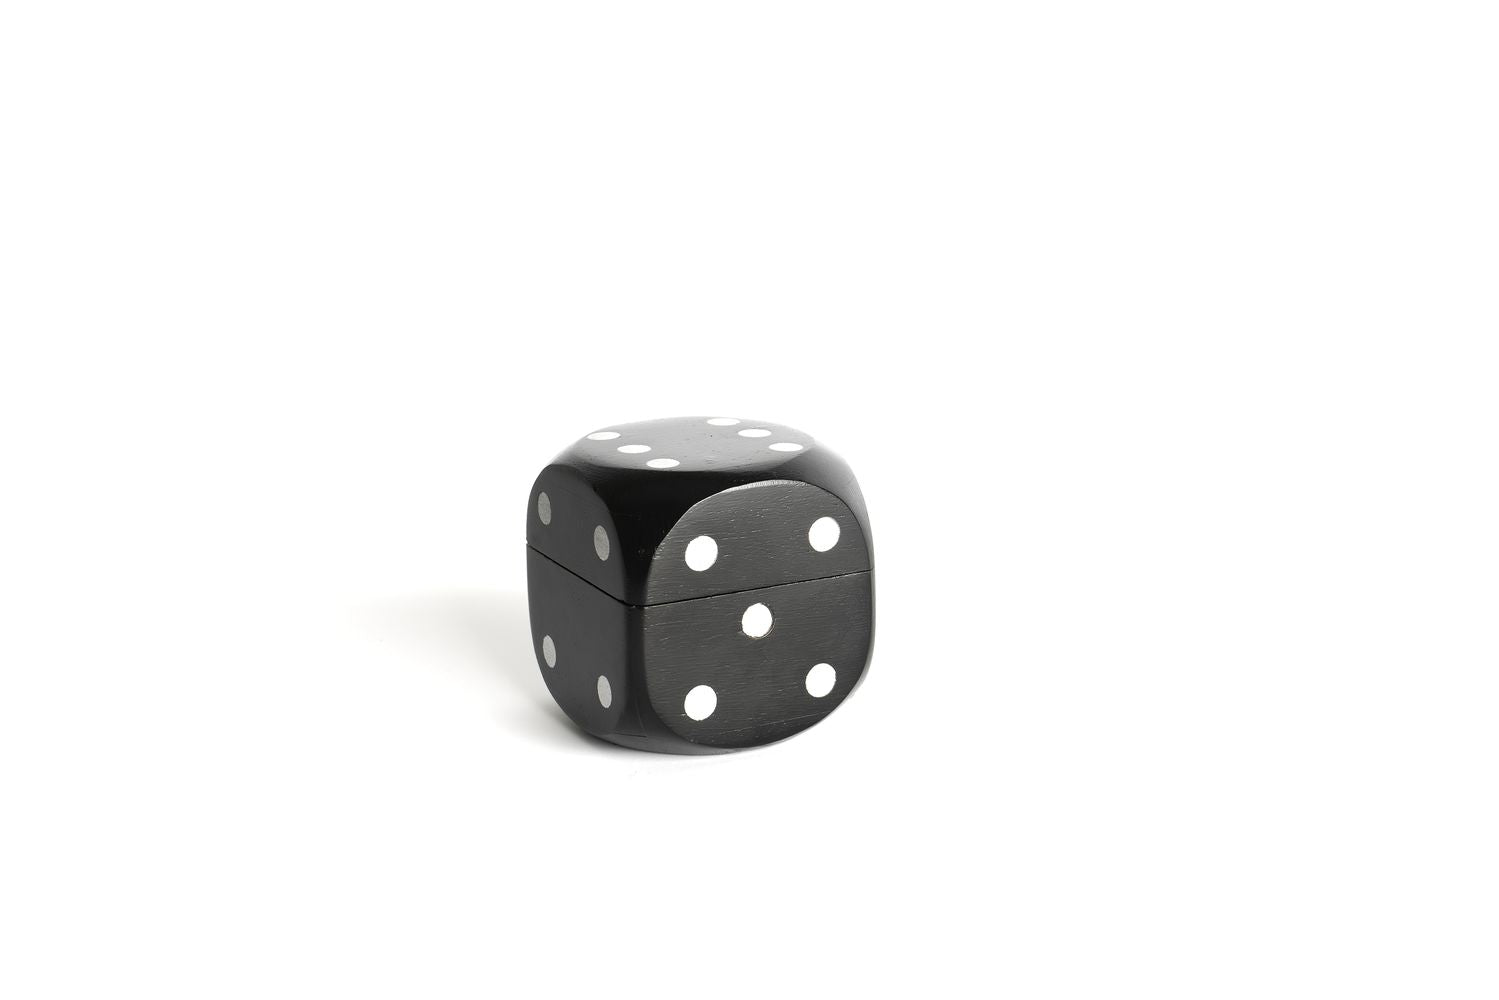 Autentické modely Cube Box hodí kostky, černé